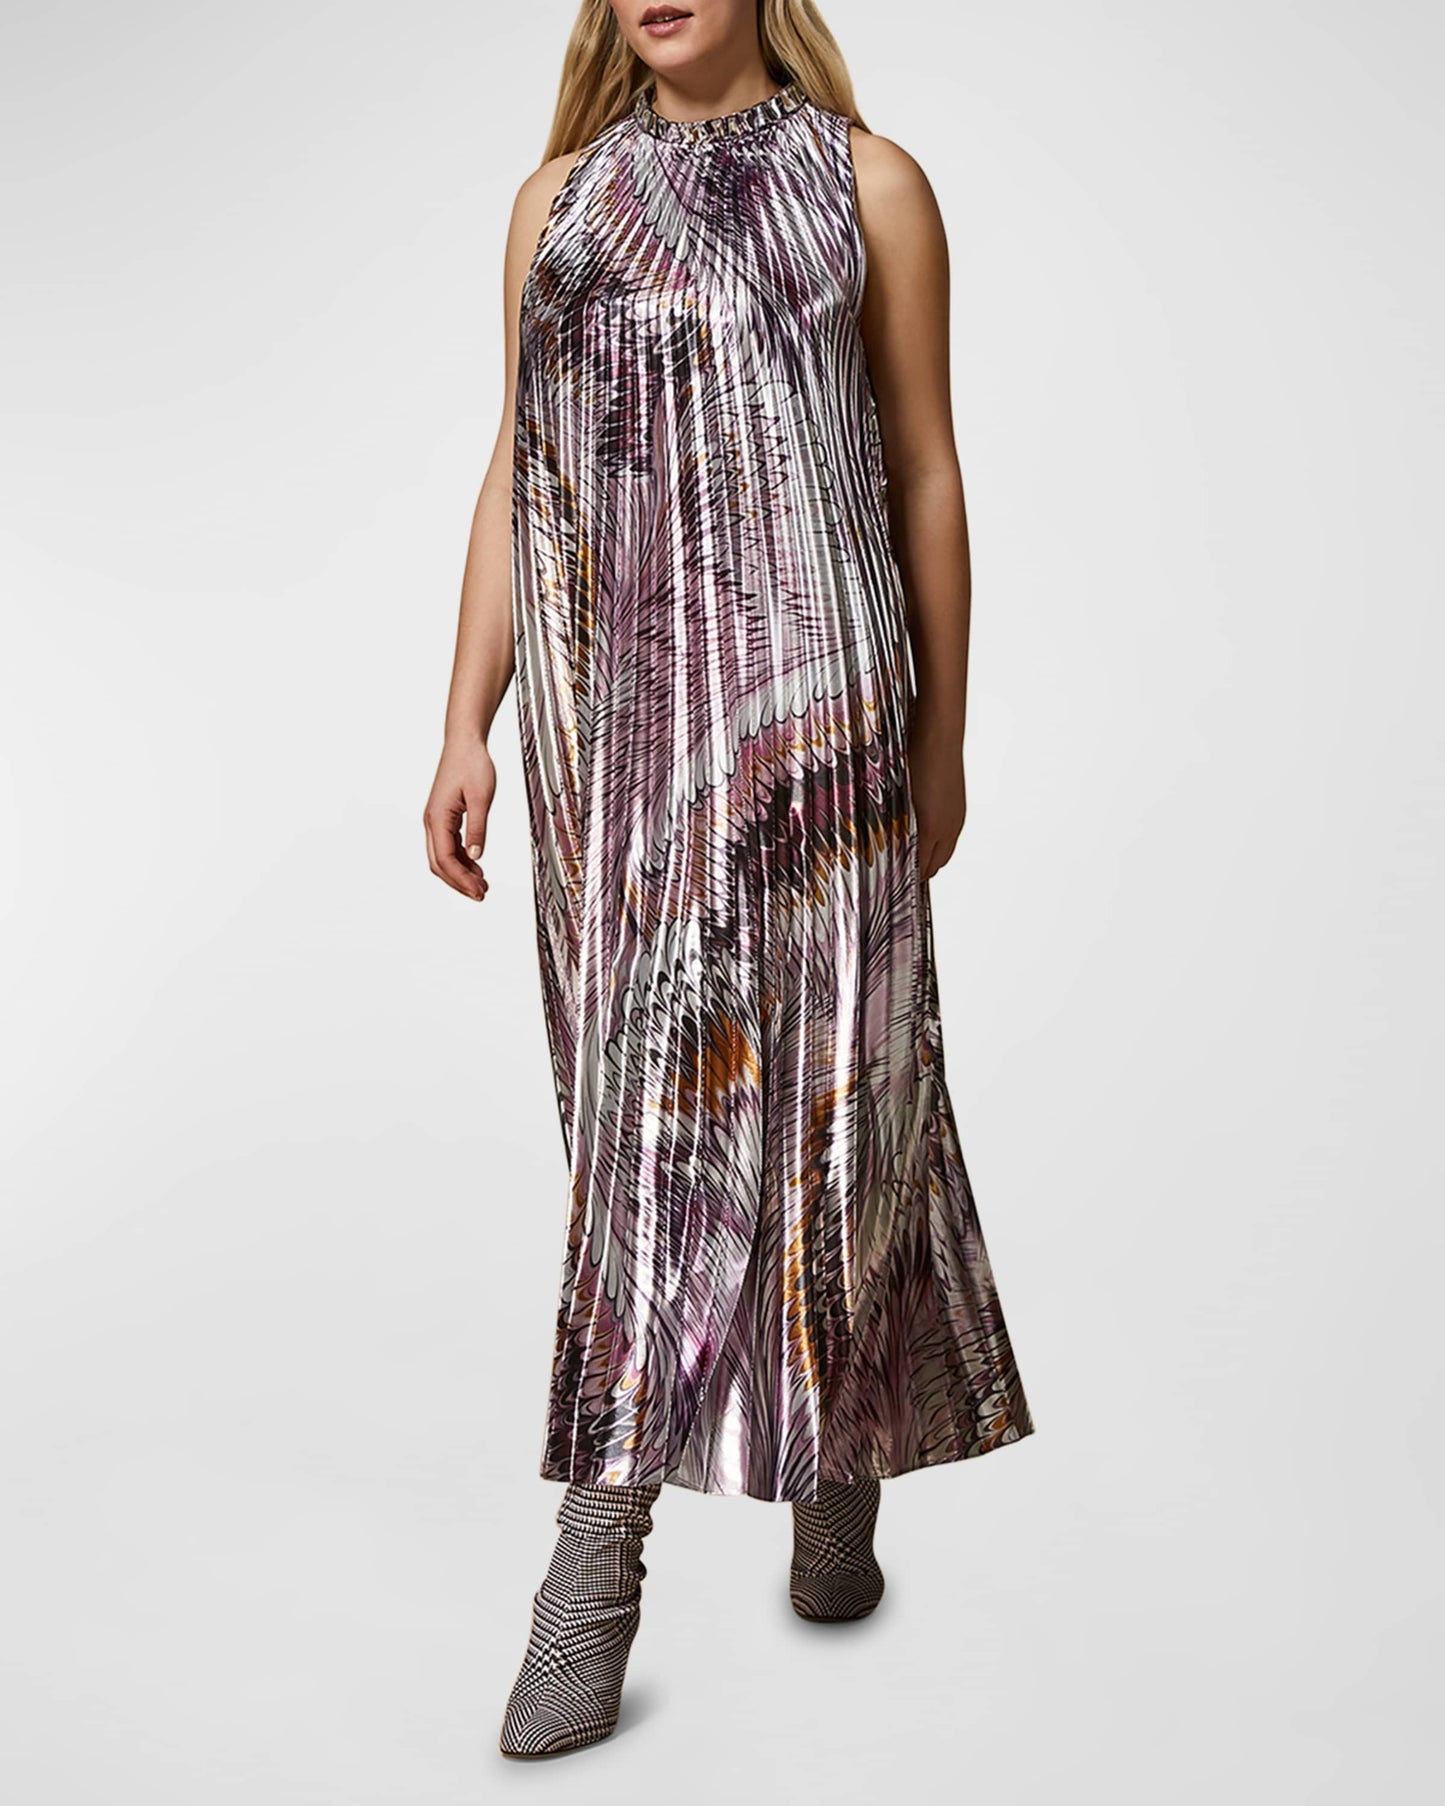 Marina Rinaldi Plus Size Metallic Print Pleated Dress